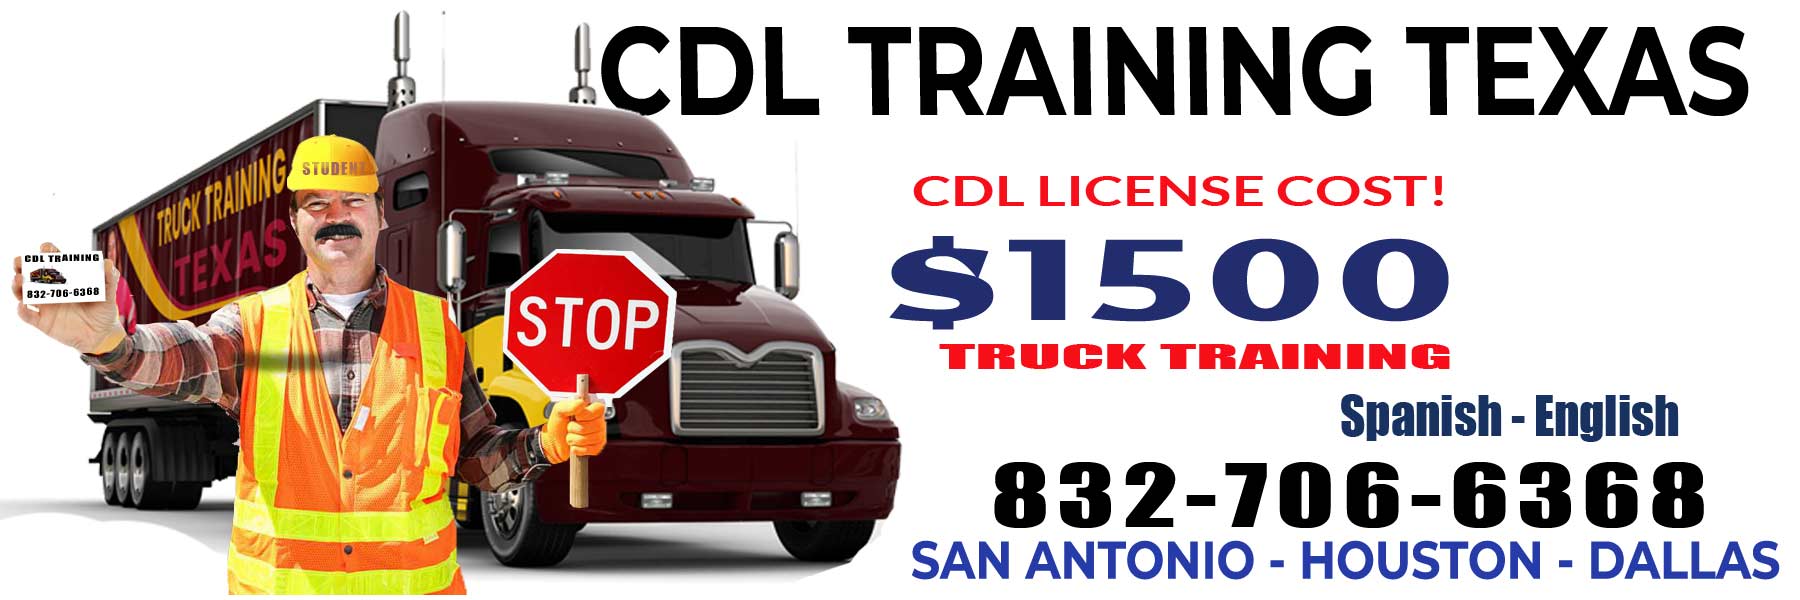 CDL School Flower Mound TX, Truck training $1500